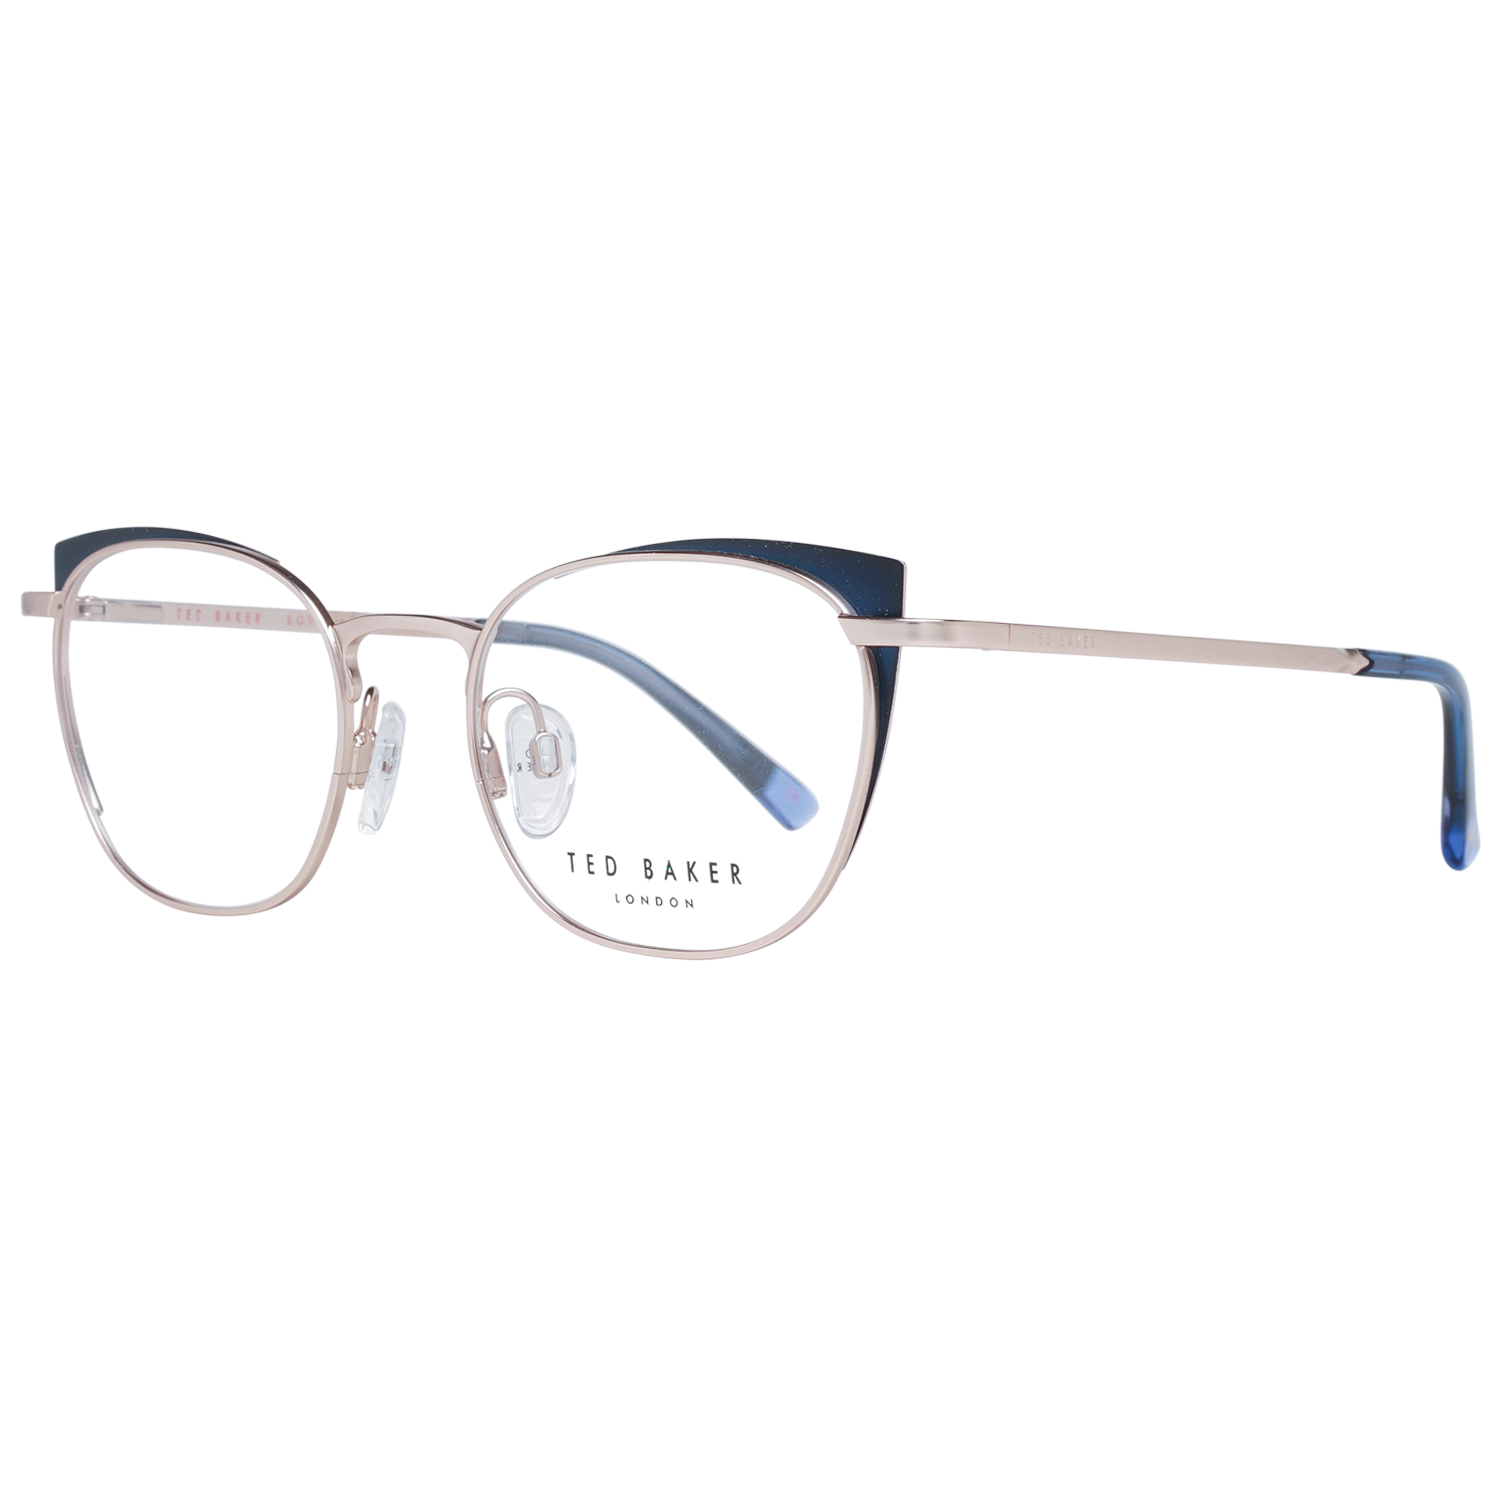 Ted Baker Frames Ted Baker Prescription Glasses Optical Frame TB2273 689 49 Eyeglasses Eyewear UK USA Australia 